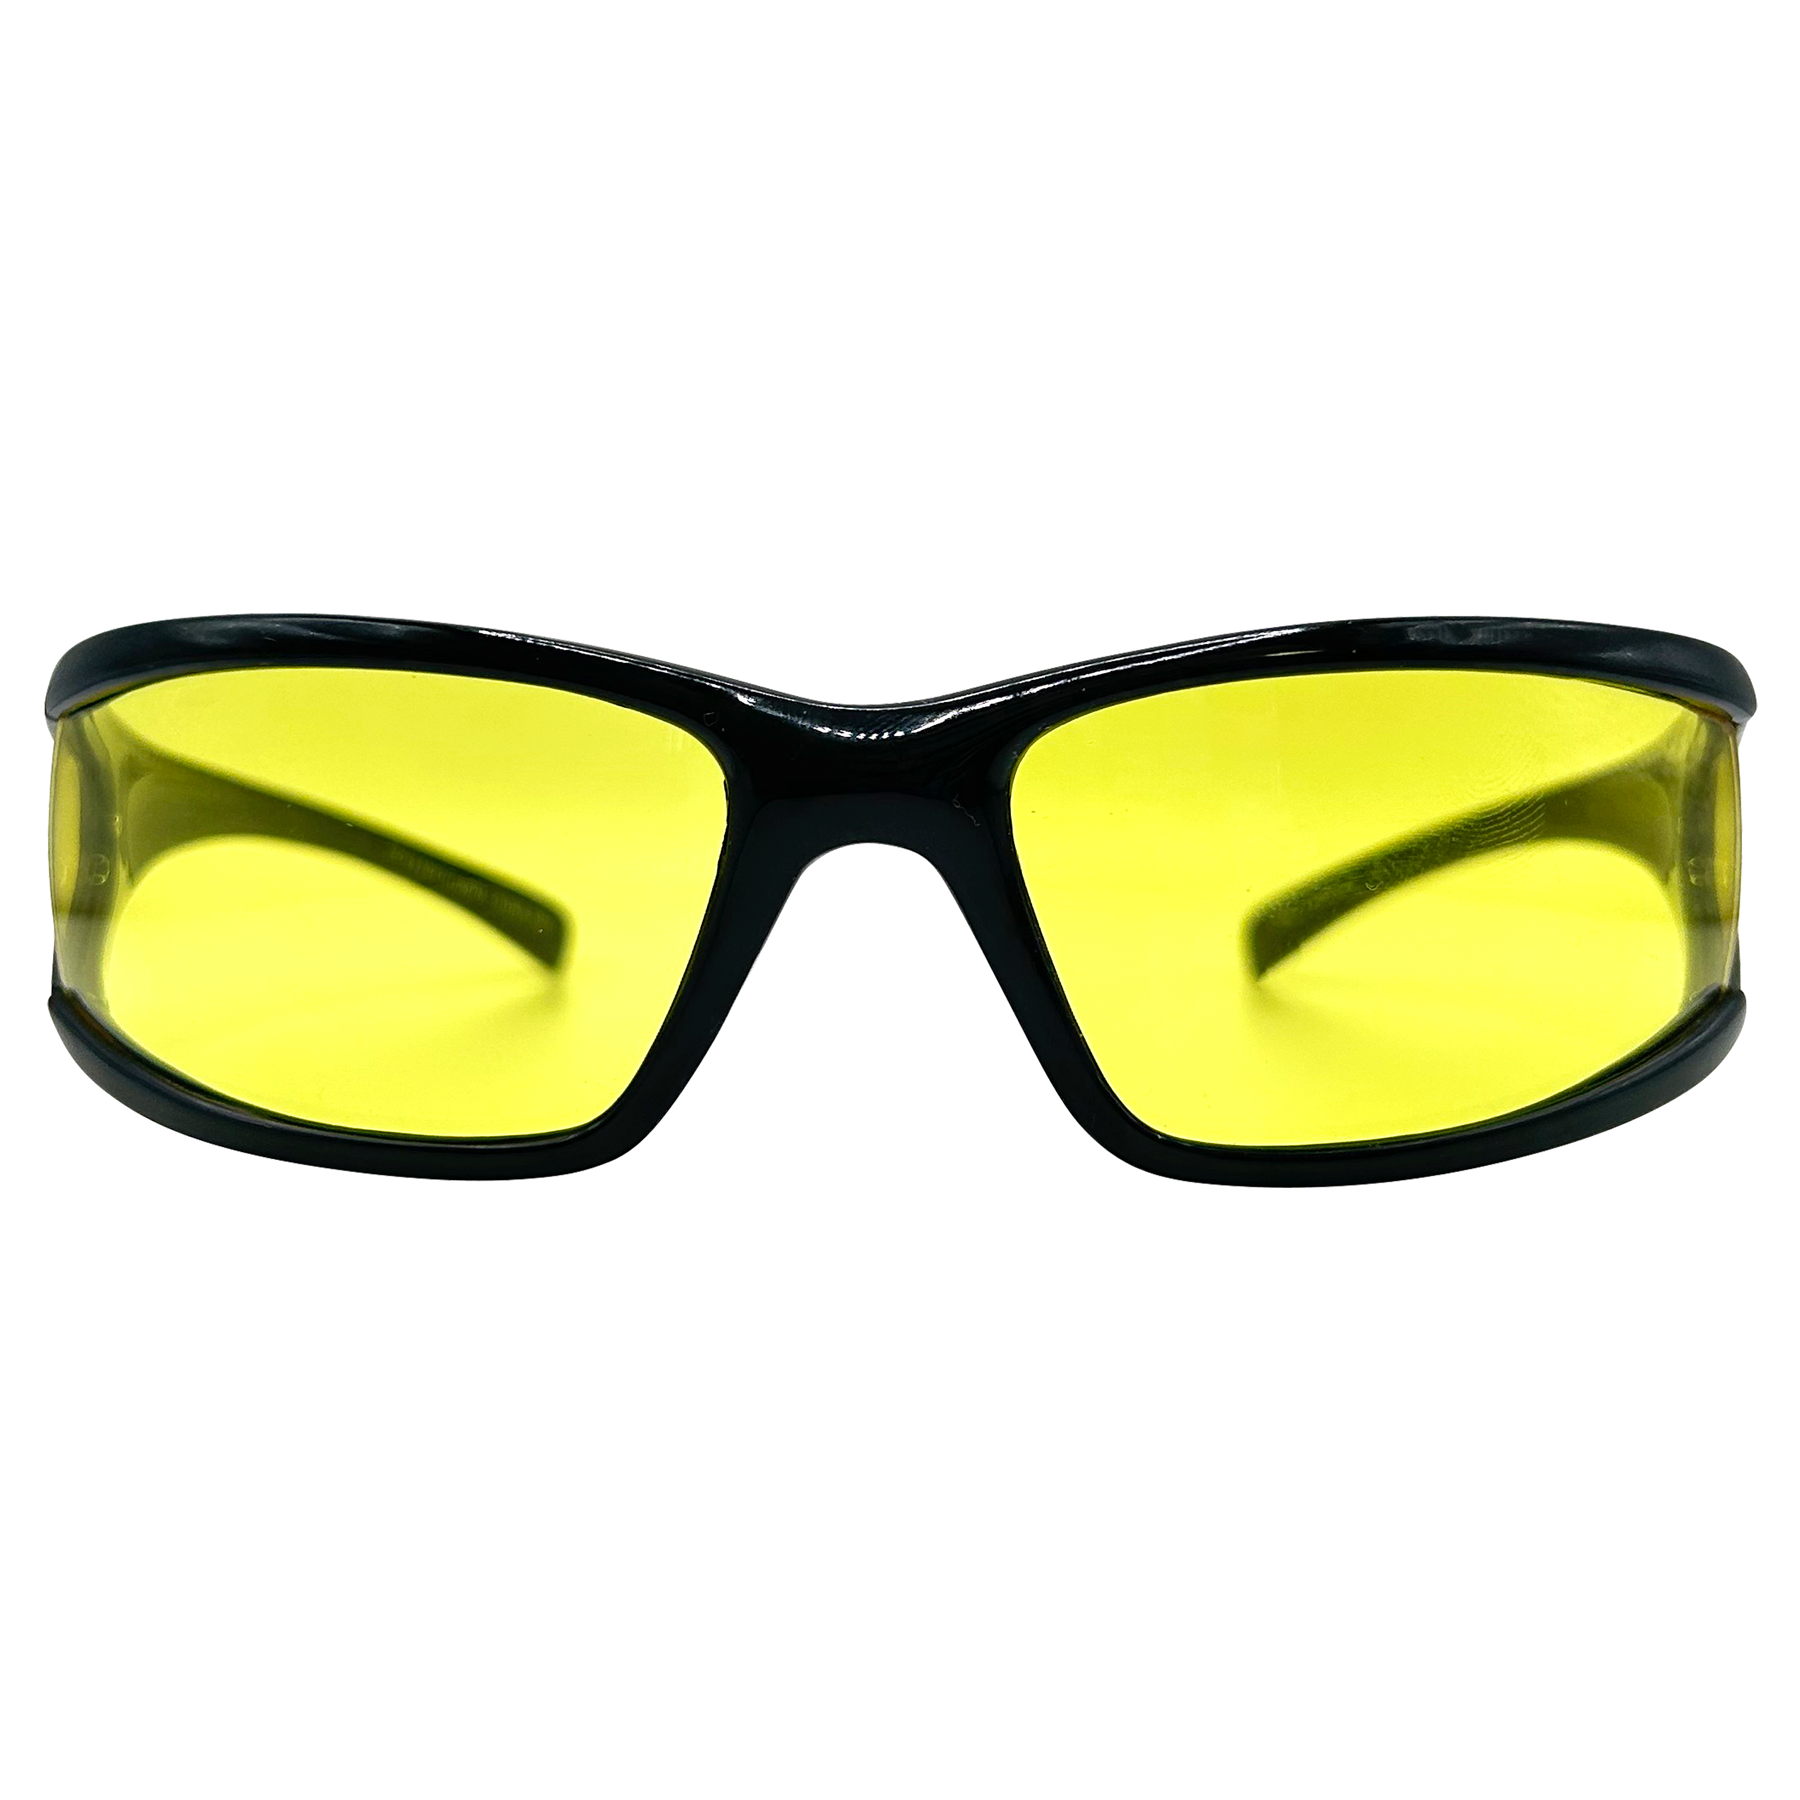 VITAMIN D Wraparound Sports Sunglasses